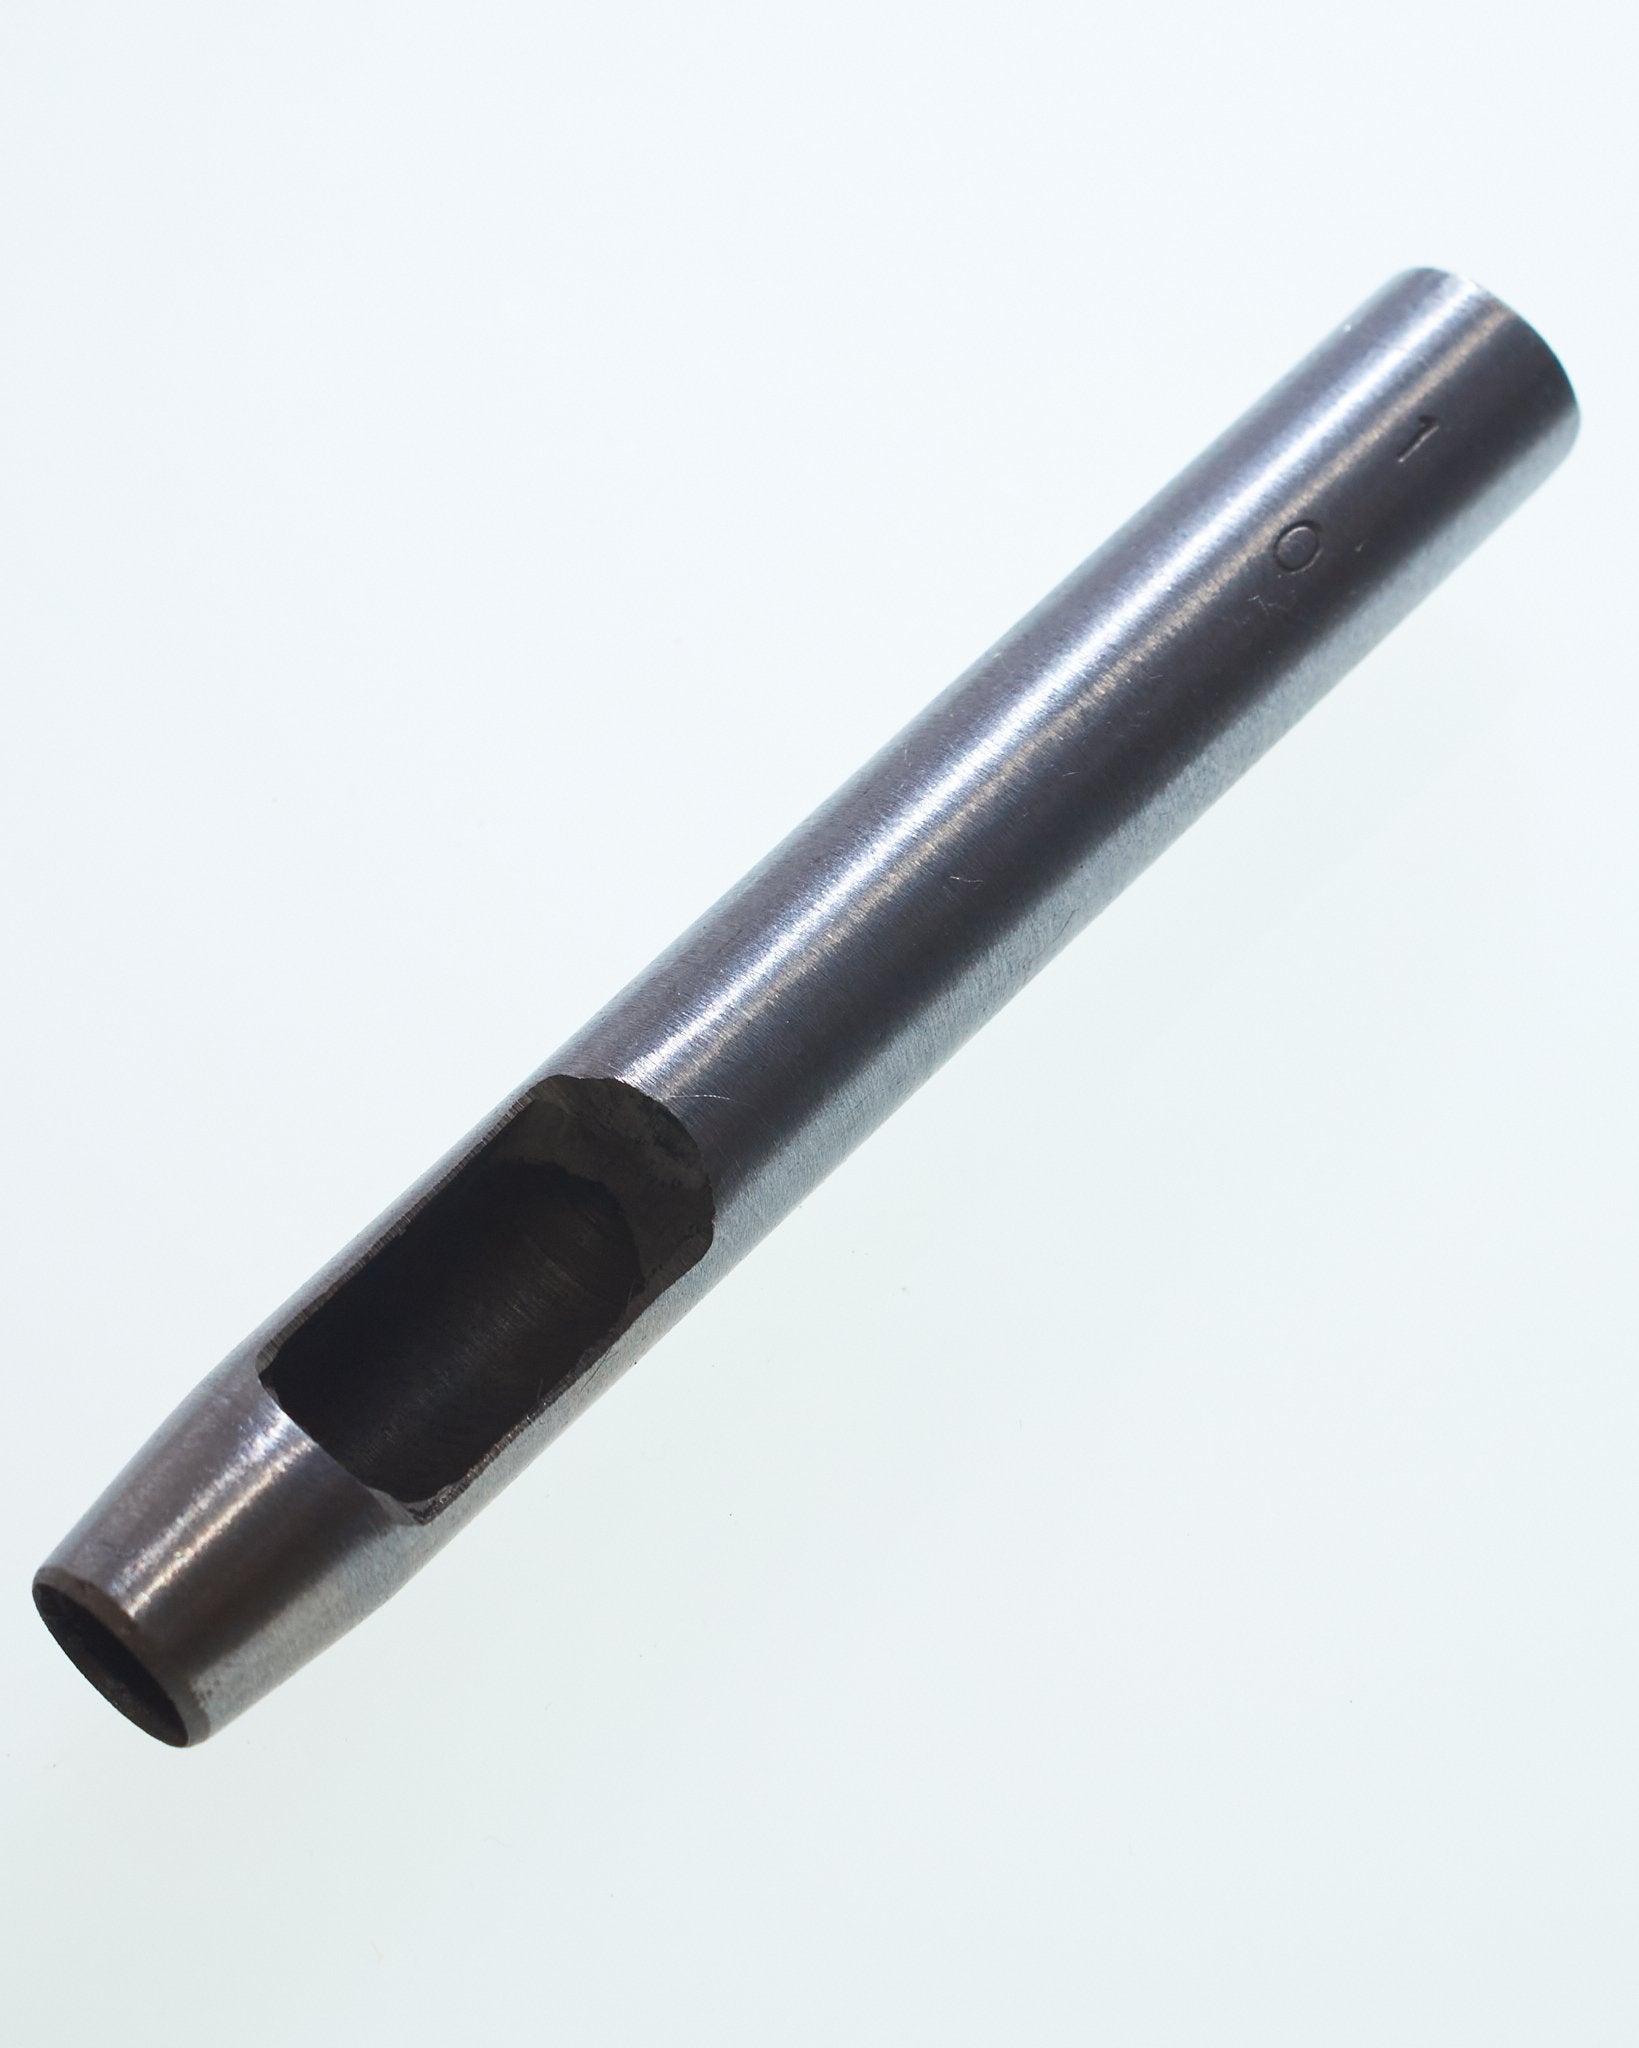 穴あけポンチ 穴径10mm １本入り 鋼製 JPC0085-8 - アクセサリーパーツ・資材のオンラインショップ「ジャパンパーツセンター」  -レザー